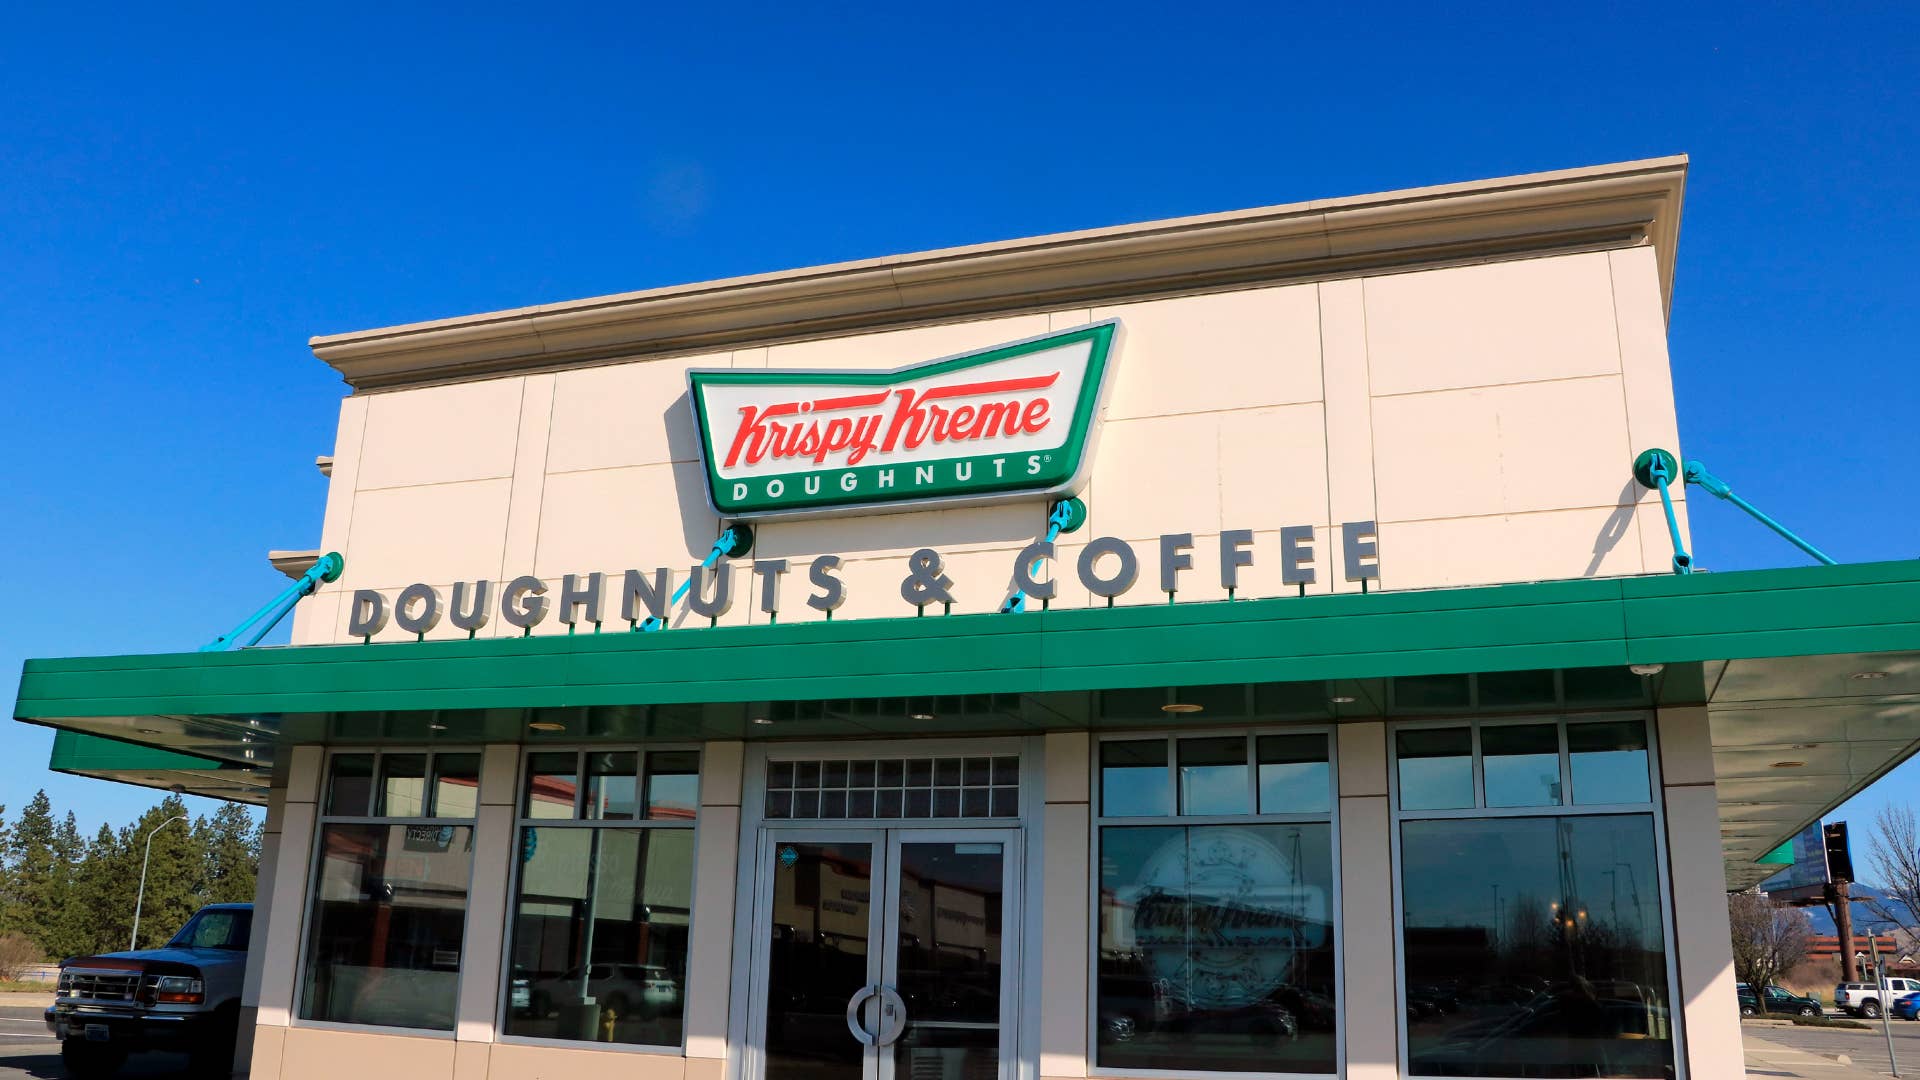 Krispy Kreme storefront is pictured